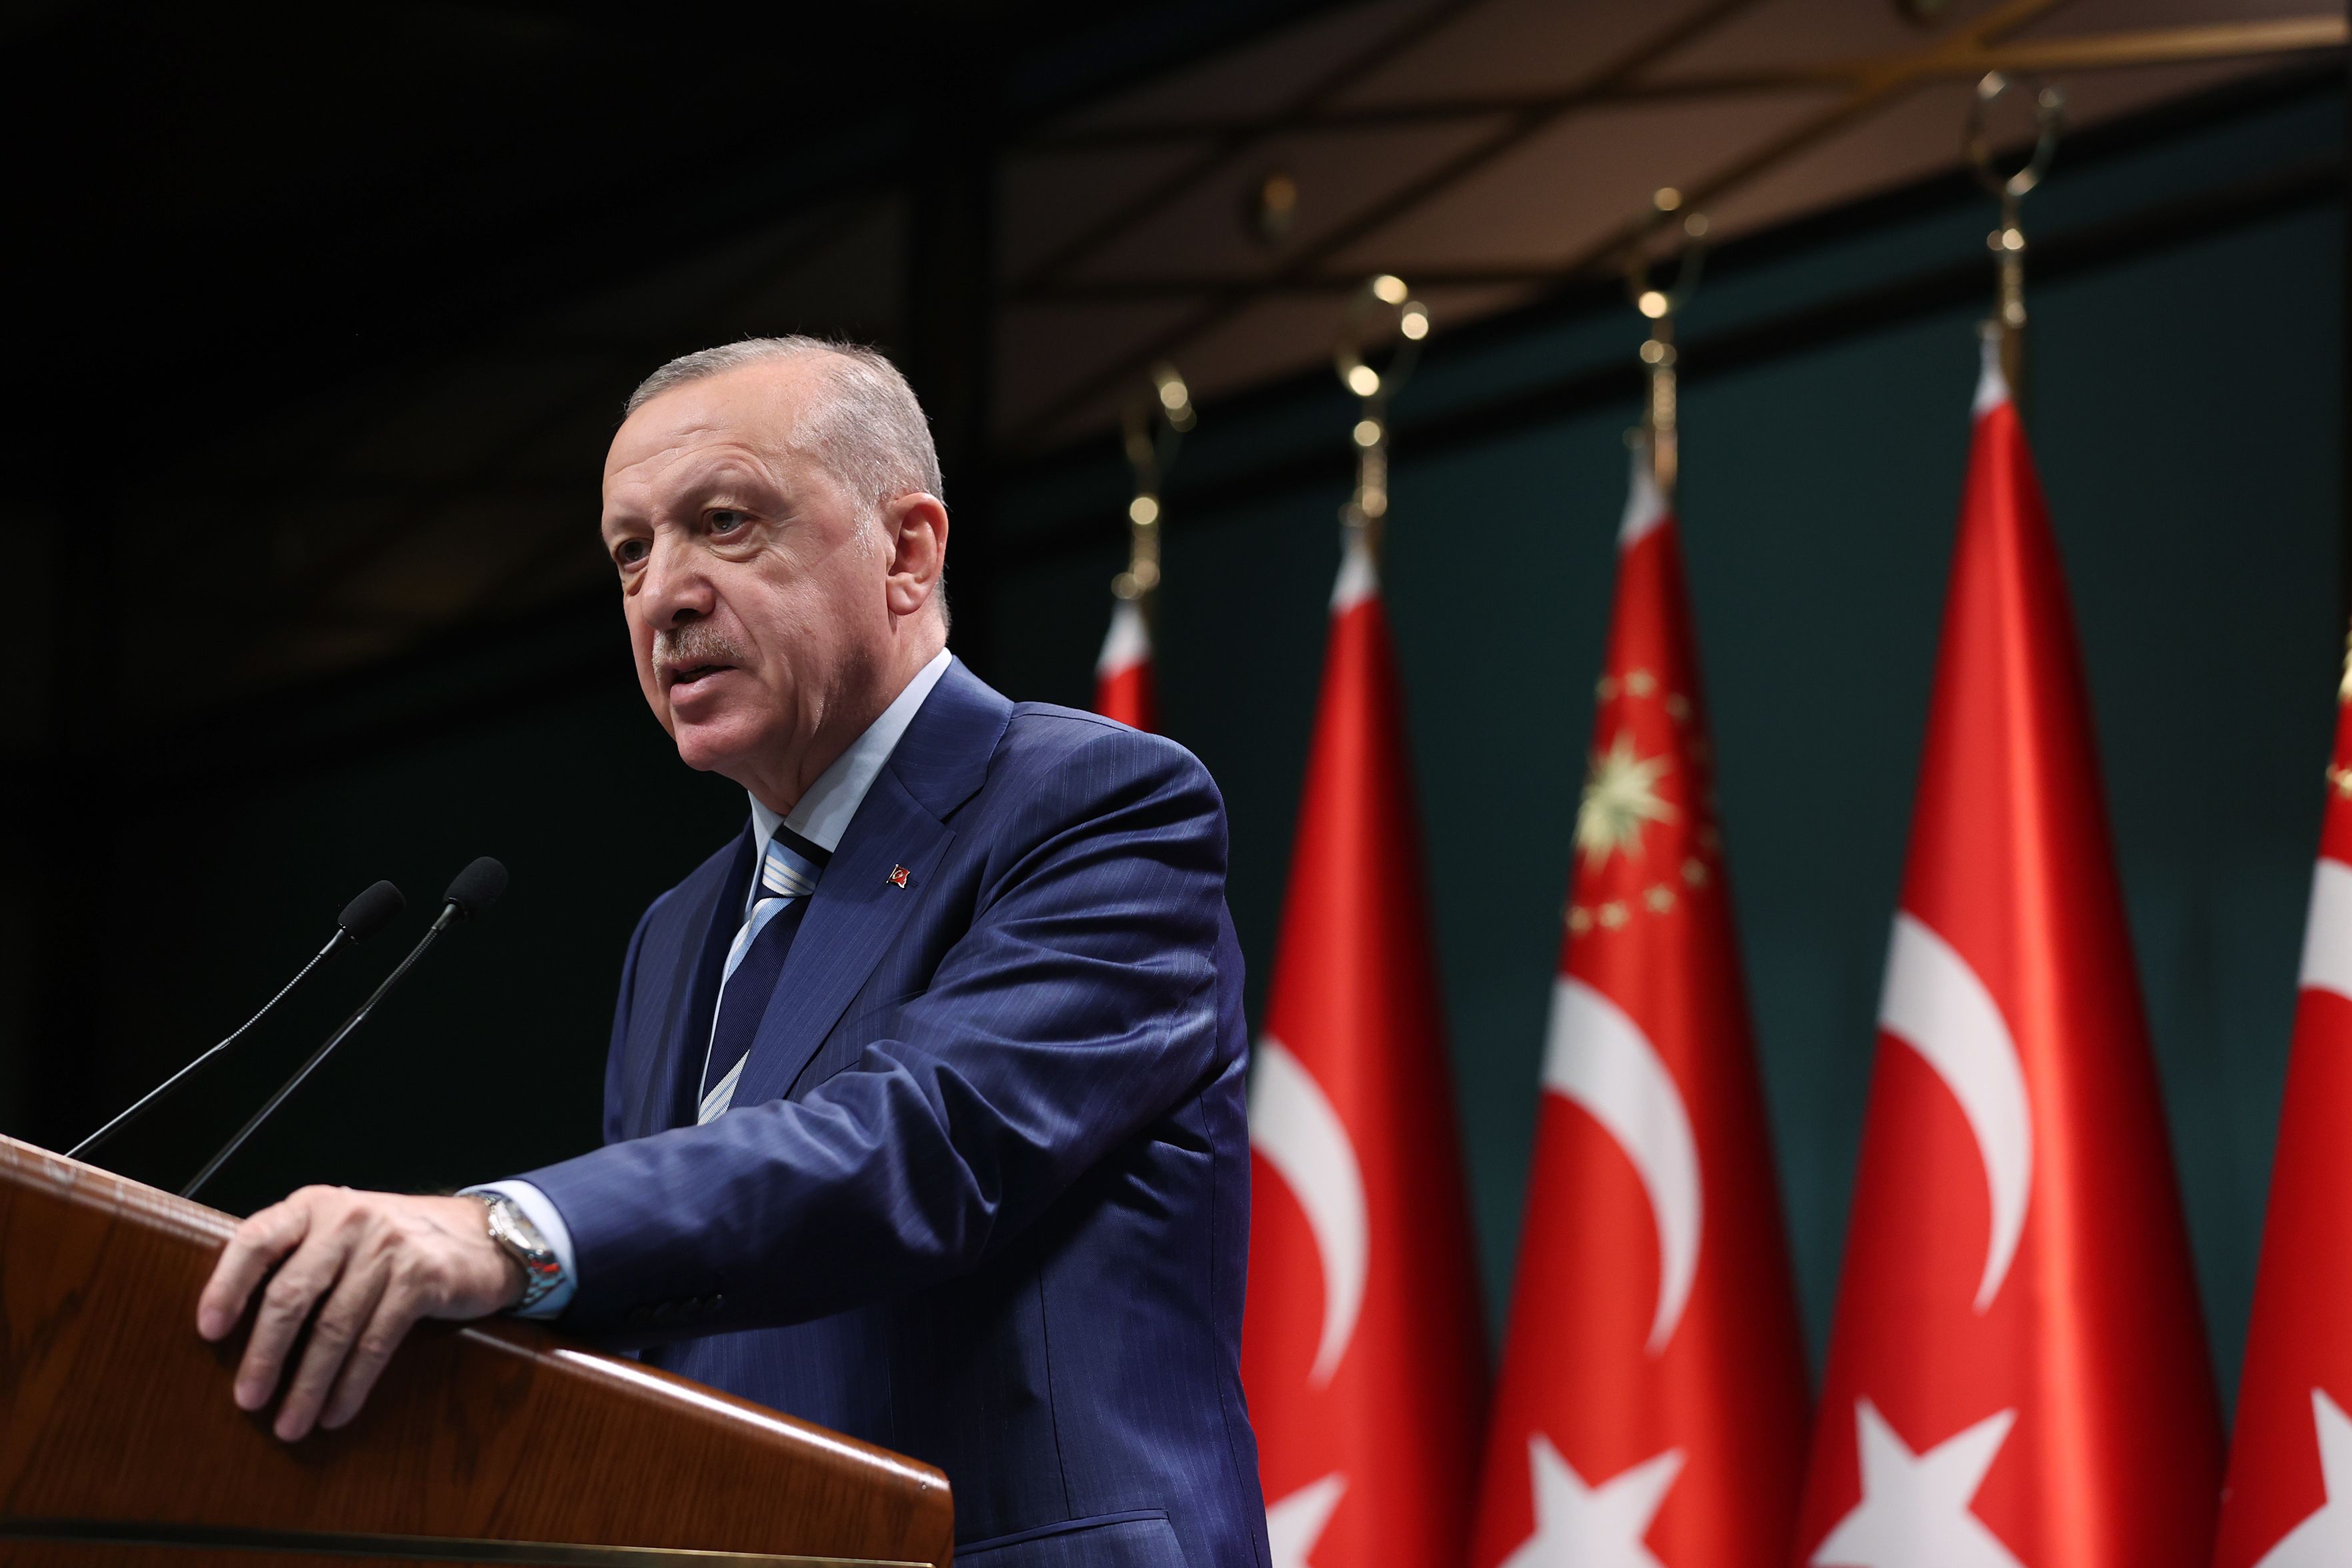 Кращого лідера для відносин із Росією туркам годі й шукати, – політолог про перемогу Ердогана - 24 Канал